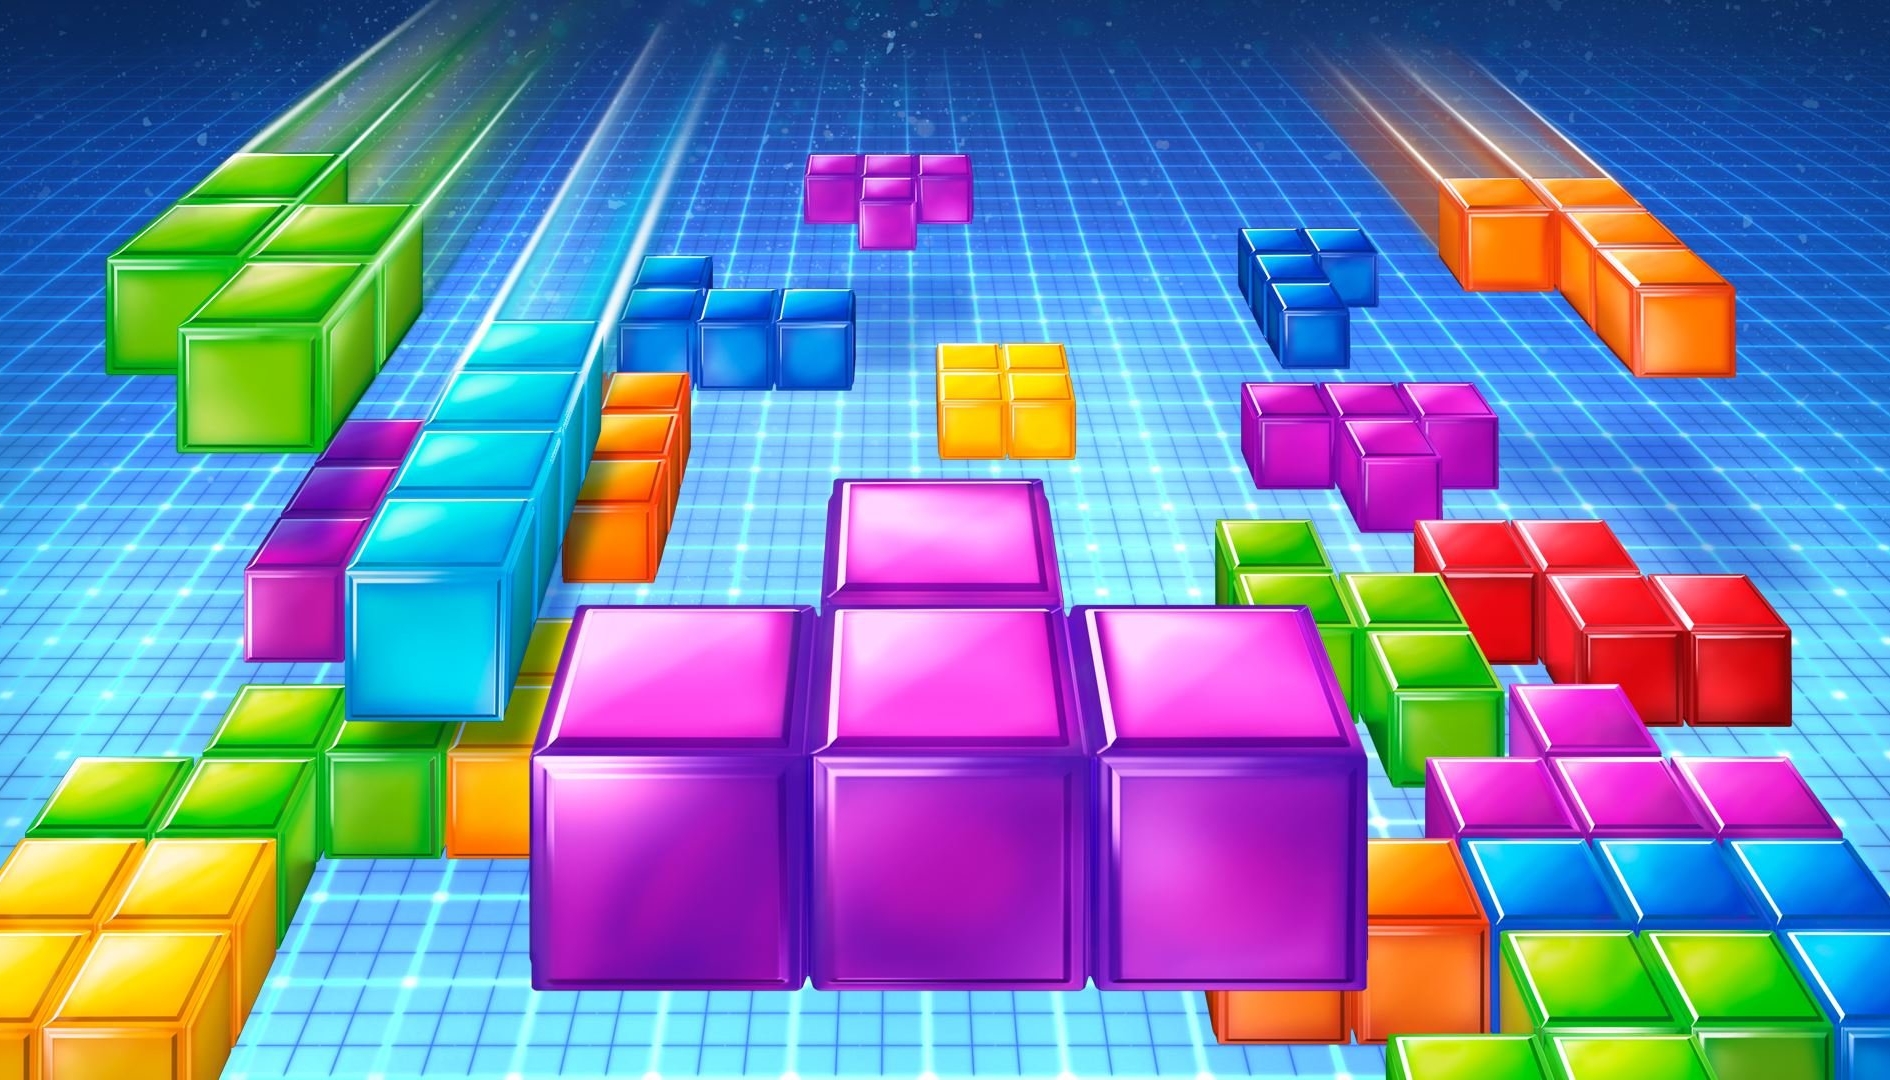 Una battle royale di Tetris su Game Boy? Possibile, con Raspberry Pi!